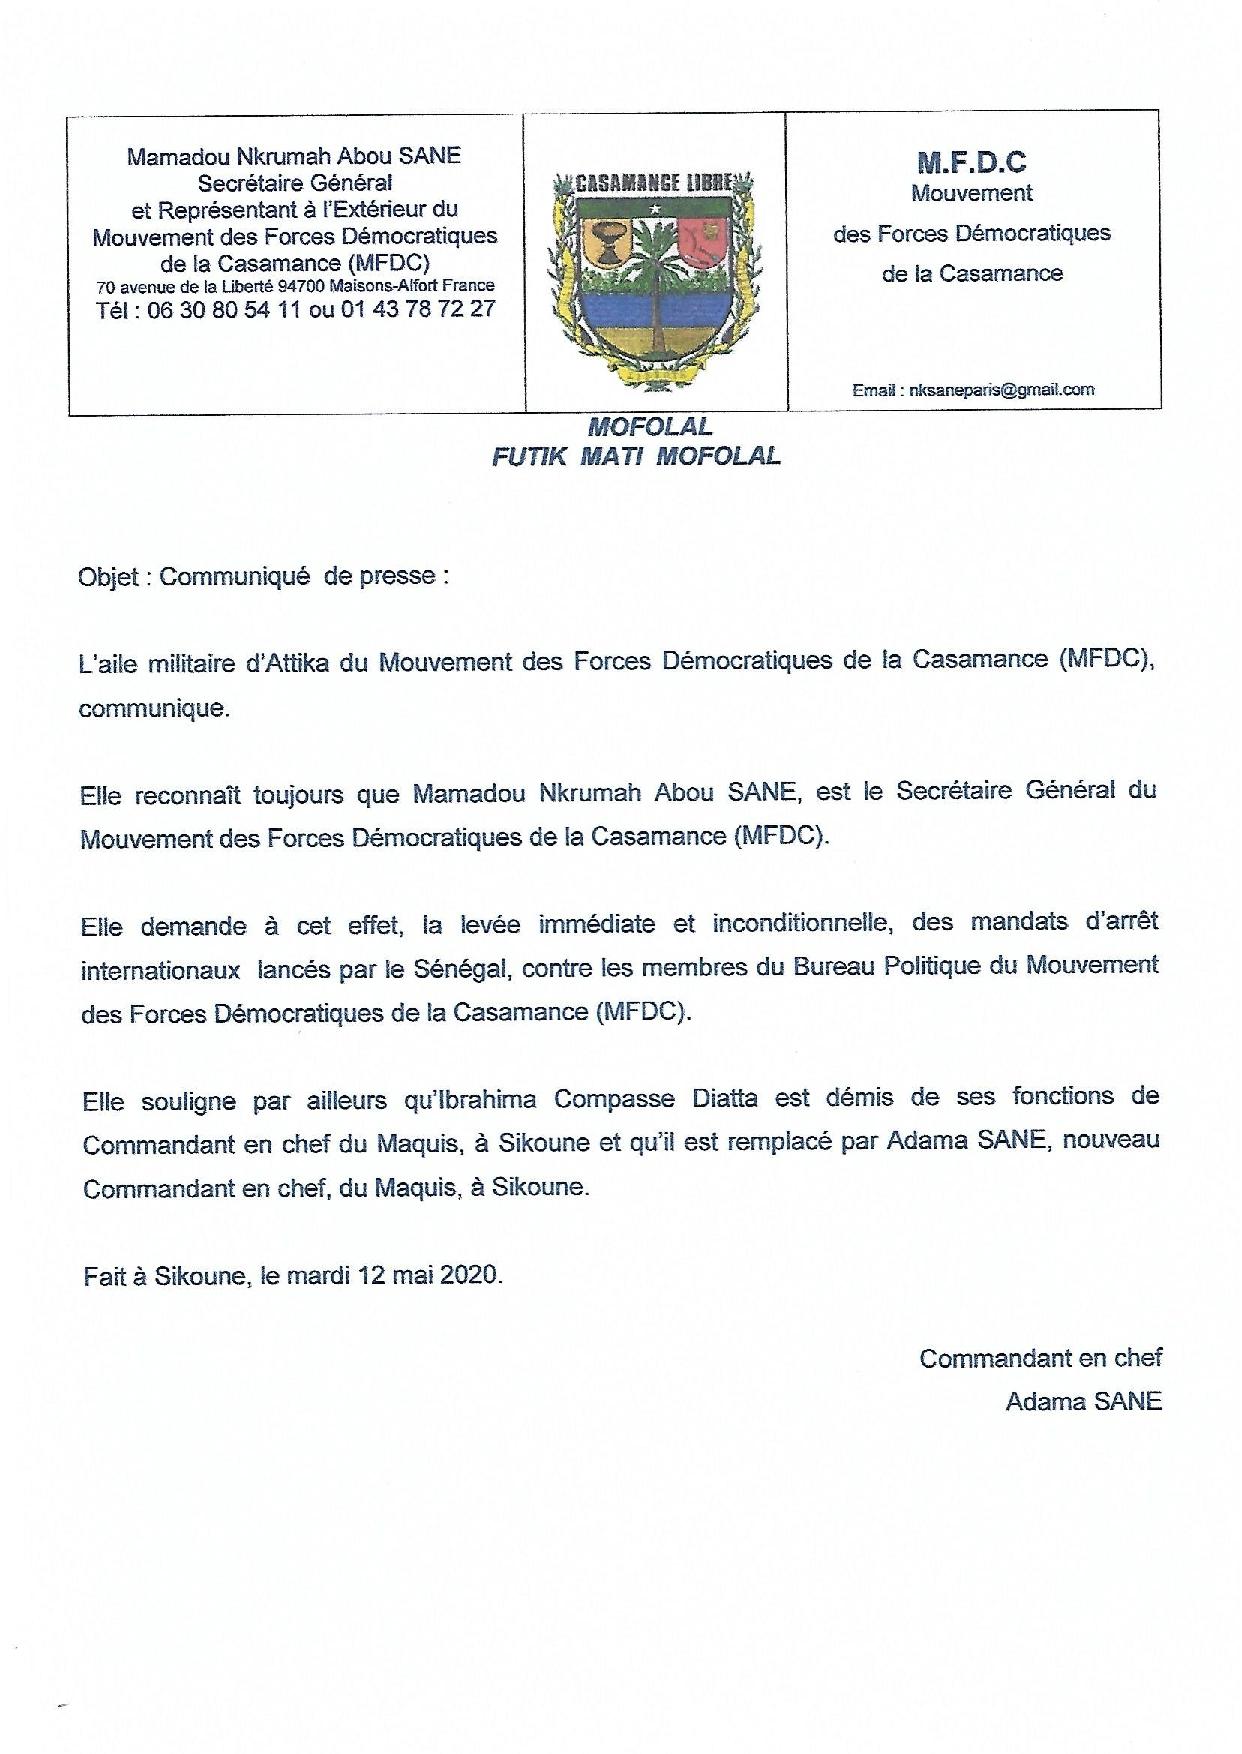 L'aille militaire du MFDC: Voici le nouveau bureau, Adama Sané remplace Compasss Diatta (Documents)